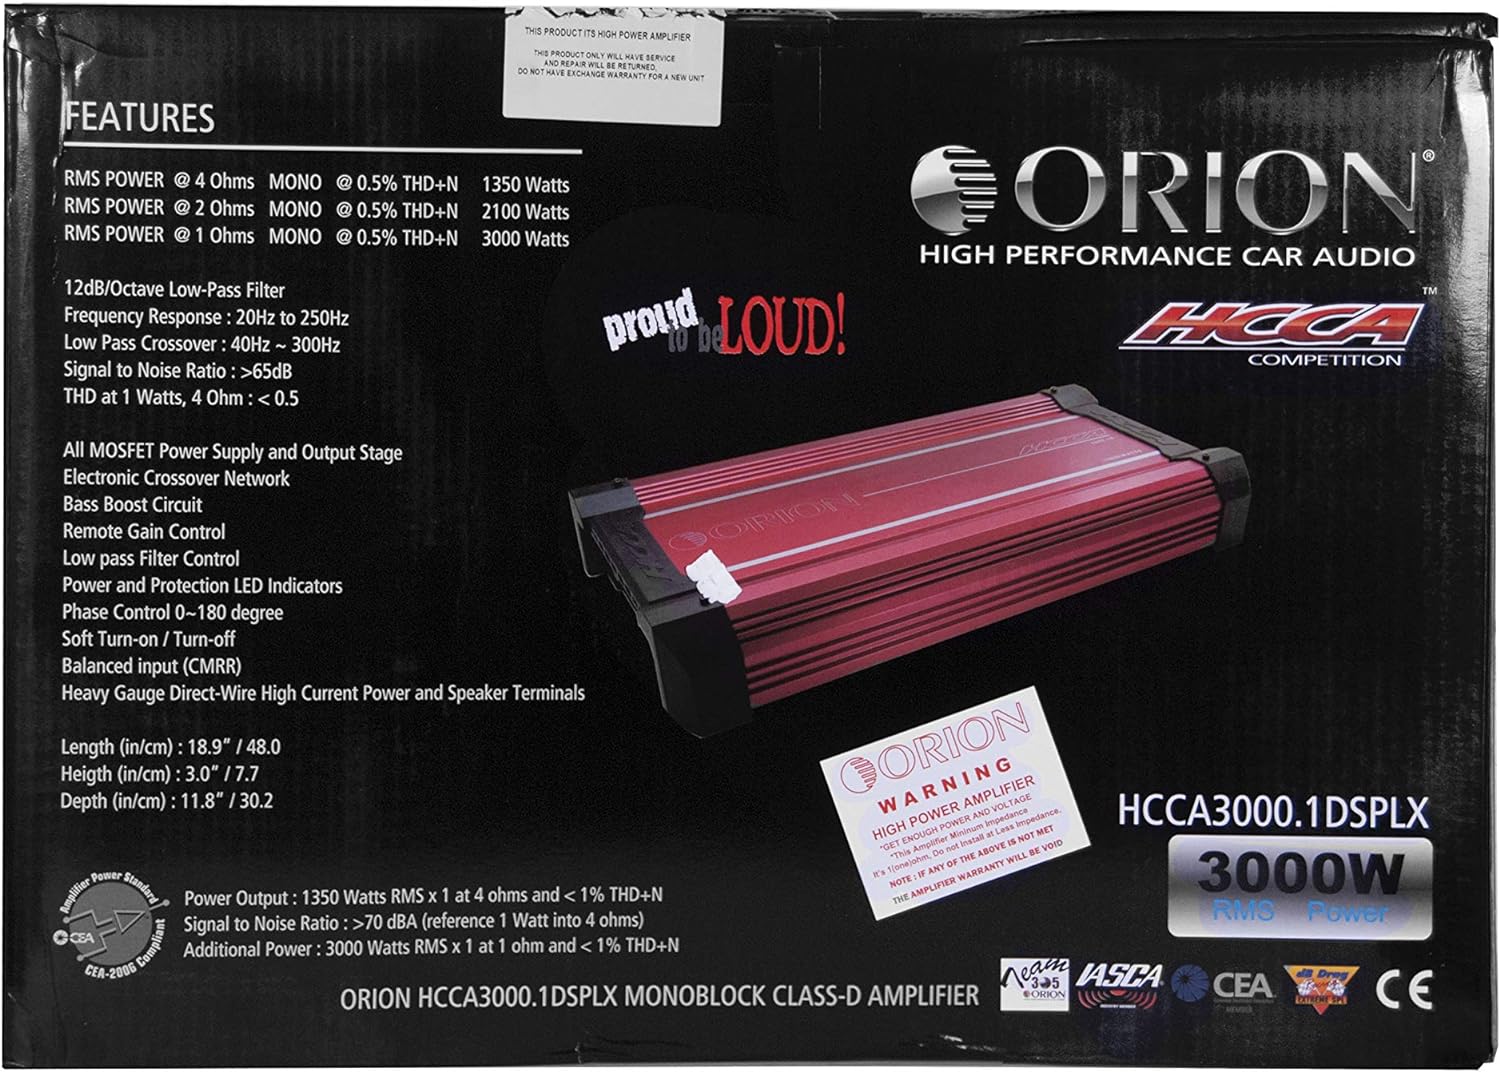 Orion Hcca Amplifier Class D Splx Mono Amplifier 3000W Rms